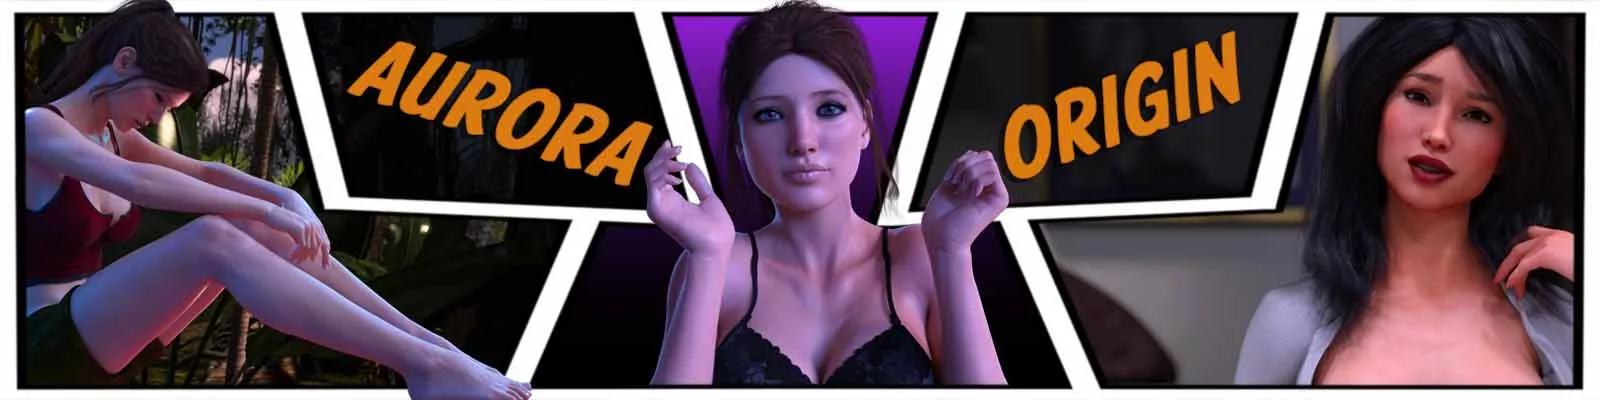 Aurora Origin 3d gioco del sesso, gioco xxx, gioco porno